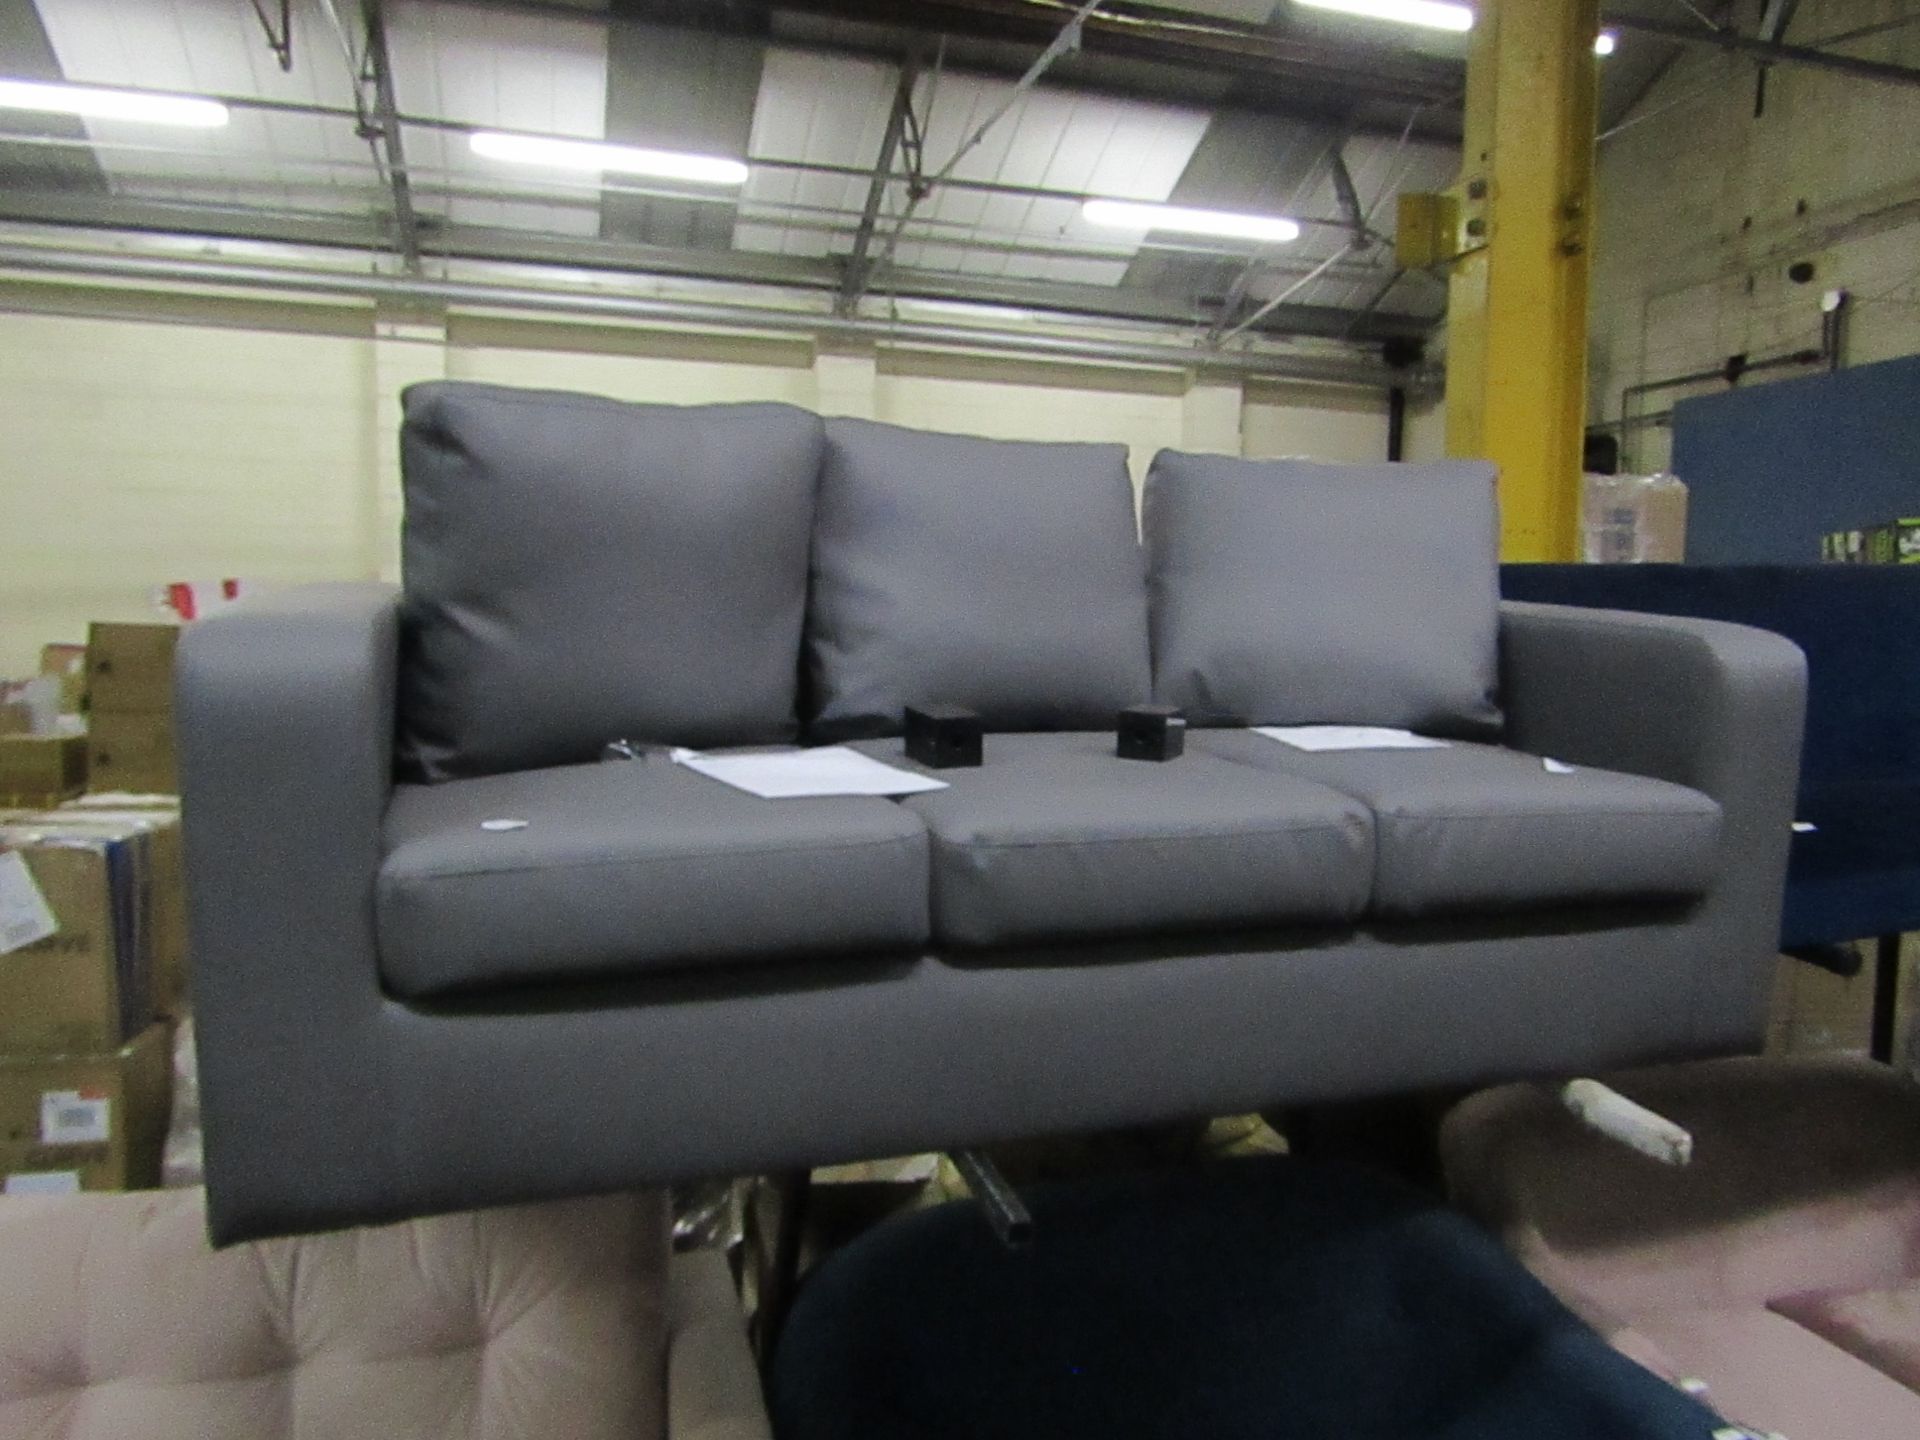 1 x LOFT Matthew Three Seater Sofa Settee in Grey Faux Leather PU RRP £378 SKU LOF-SF300054-1-BER